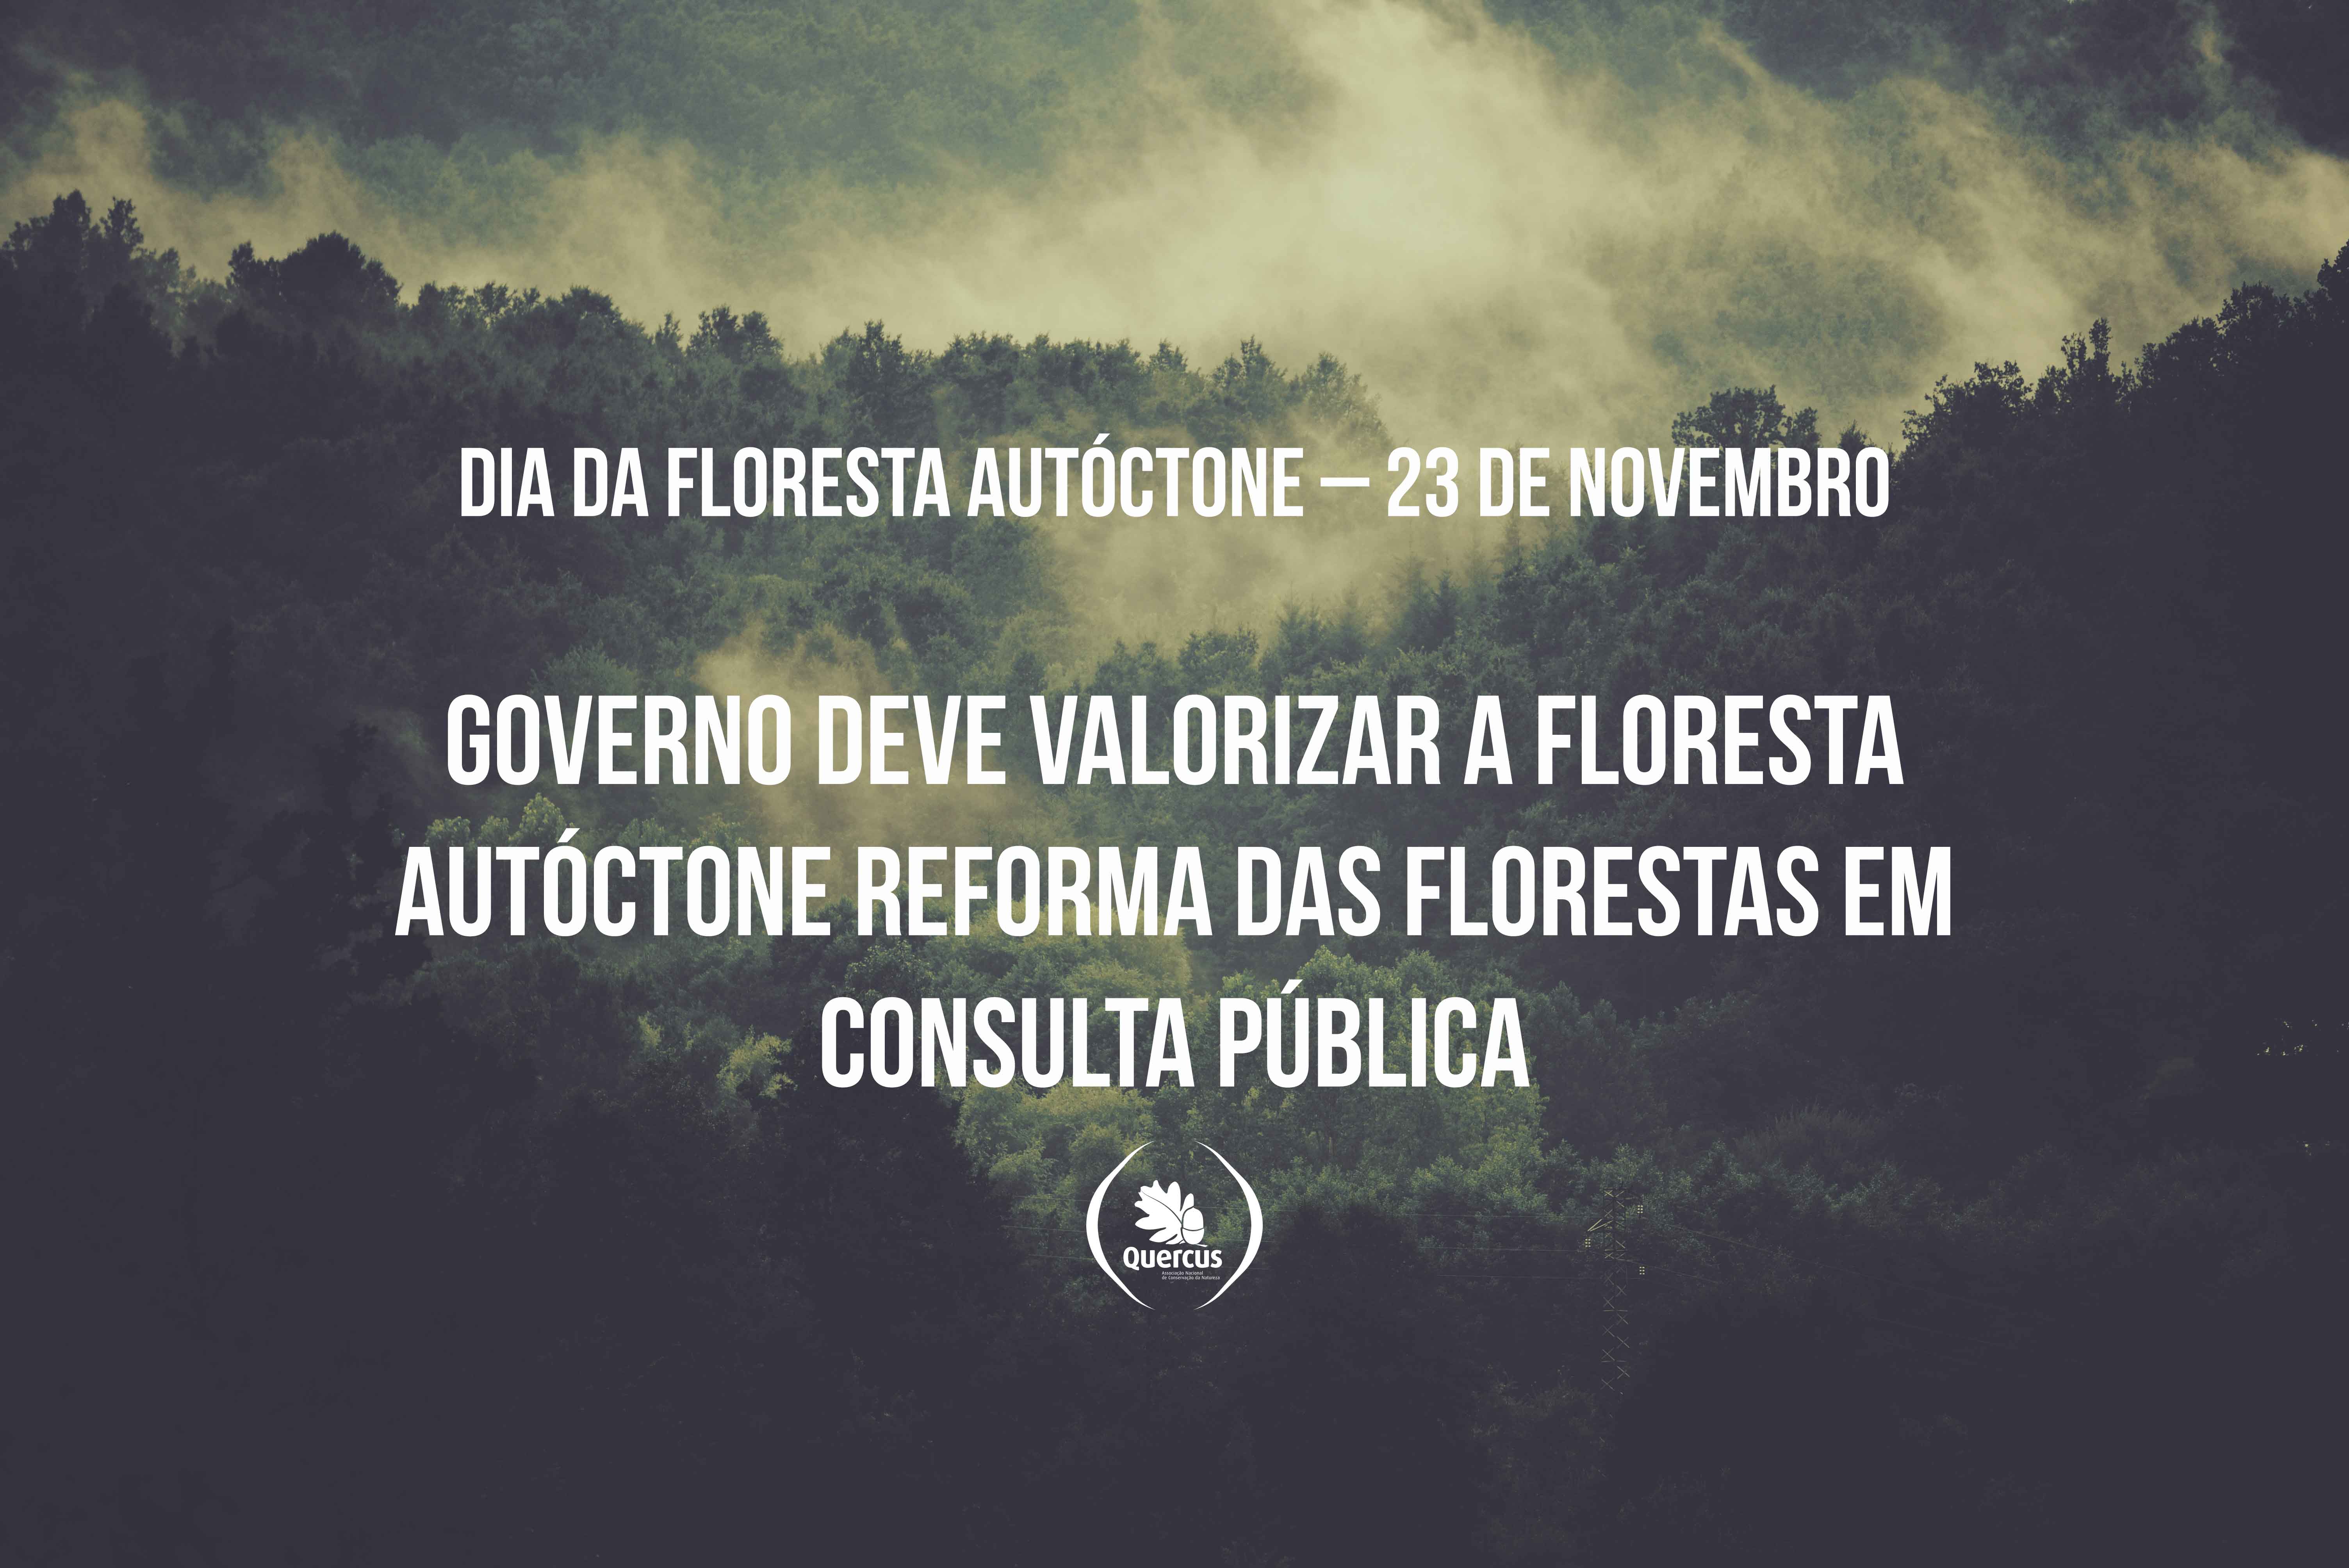 Dia da Floresta Autoctone 23 de Novembro Governo deve valorizar a Floresta Autoctone Reforma das Florestas em consulta publica 